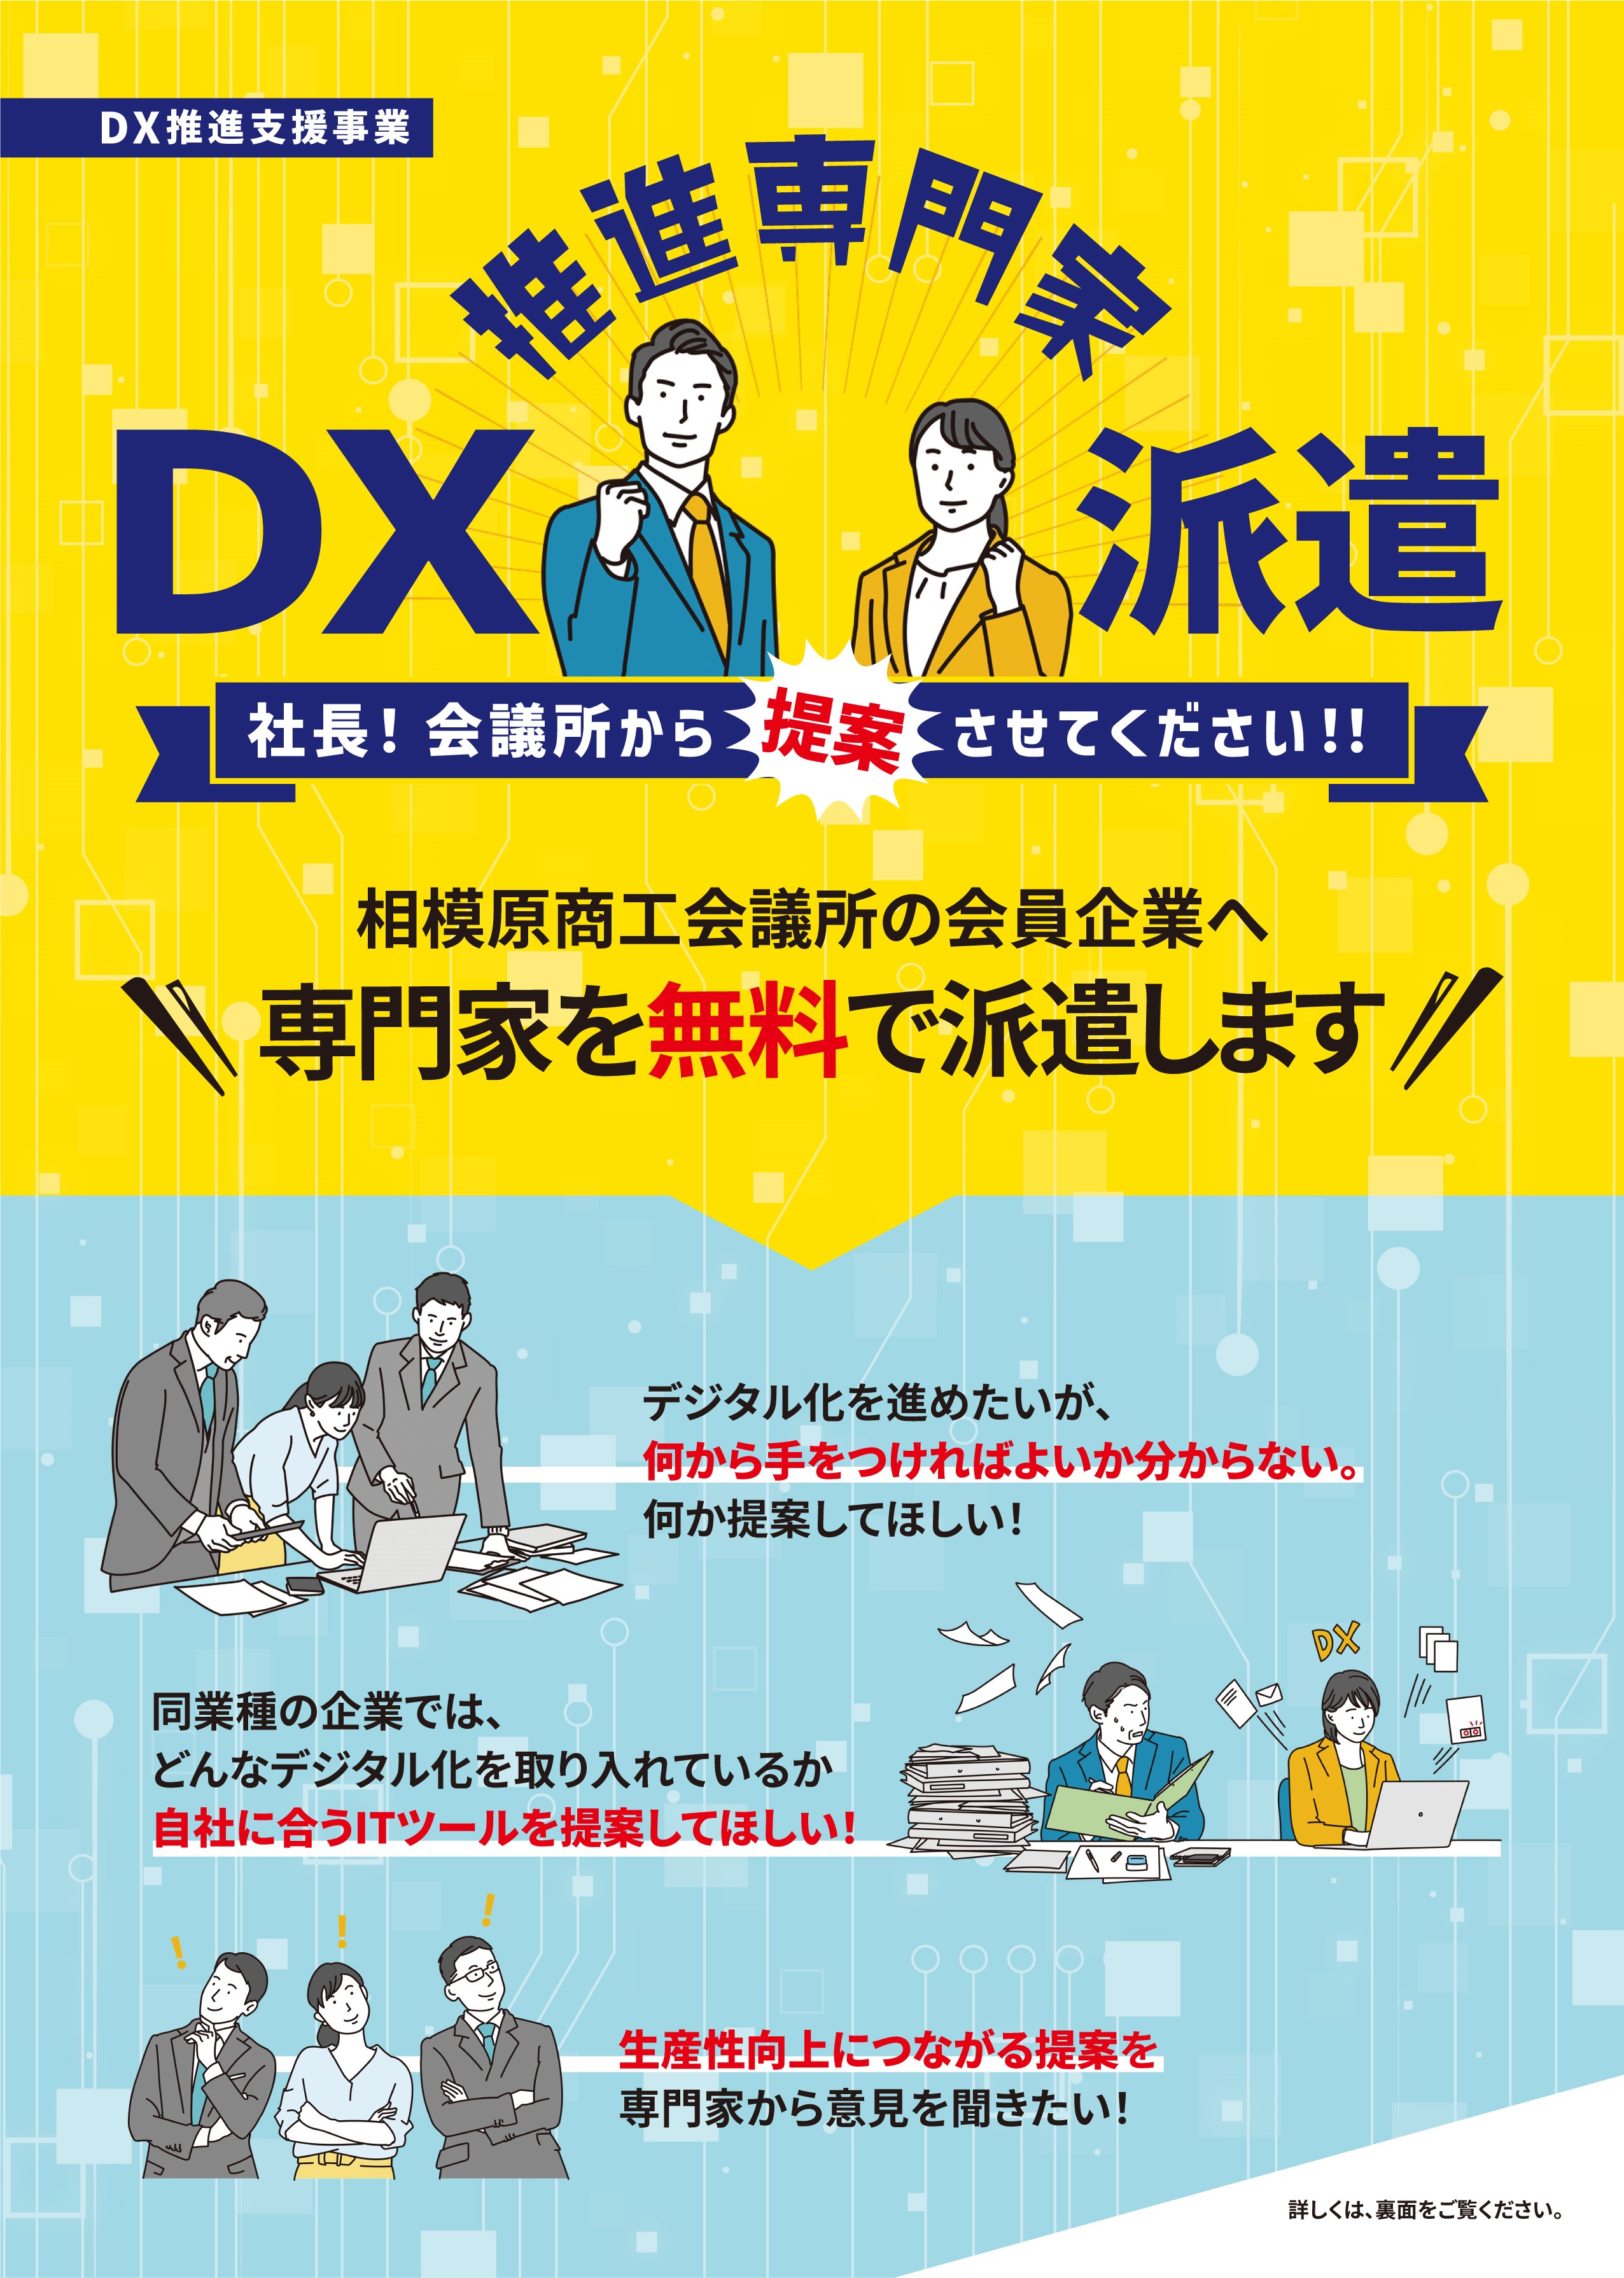 DX推進専門家派遣